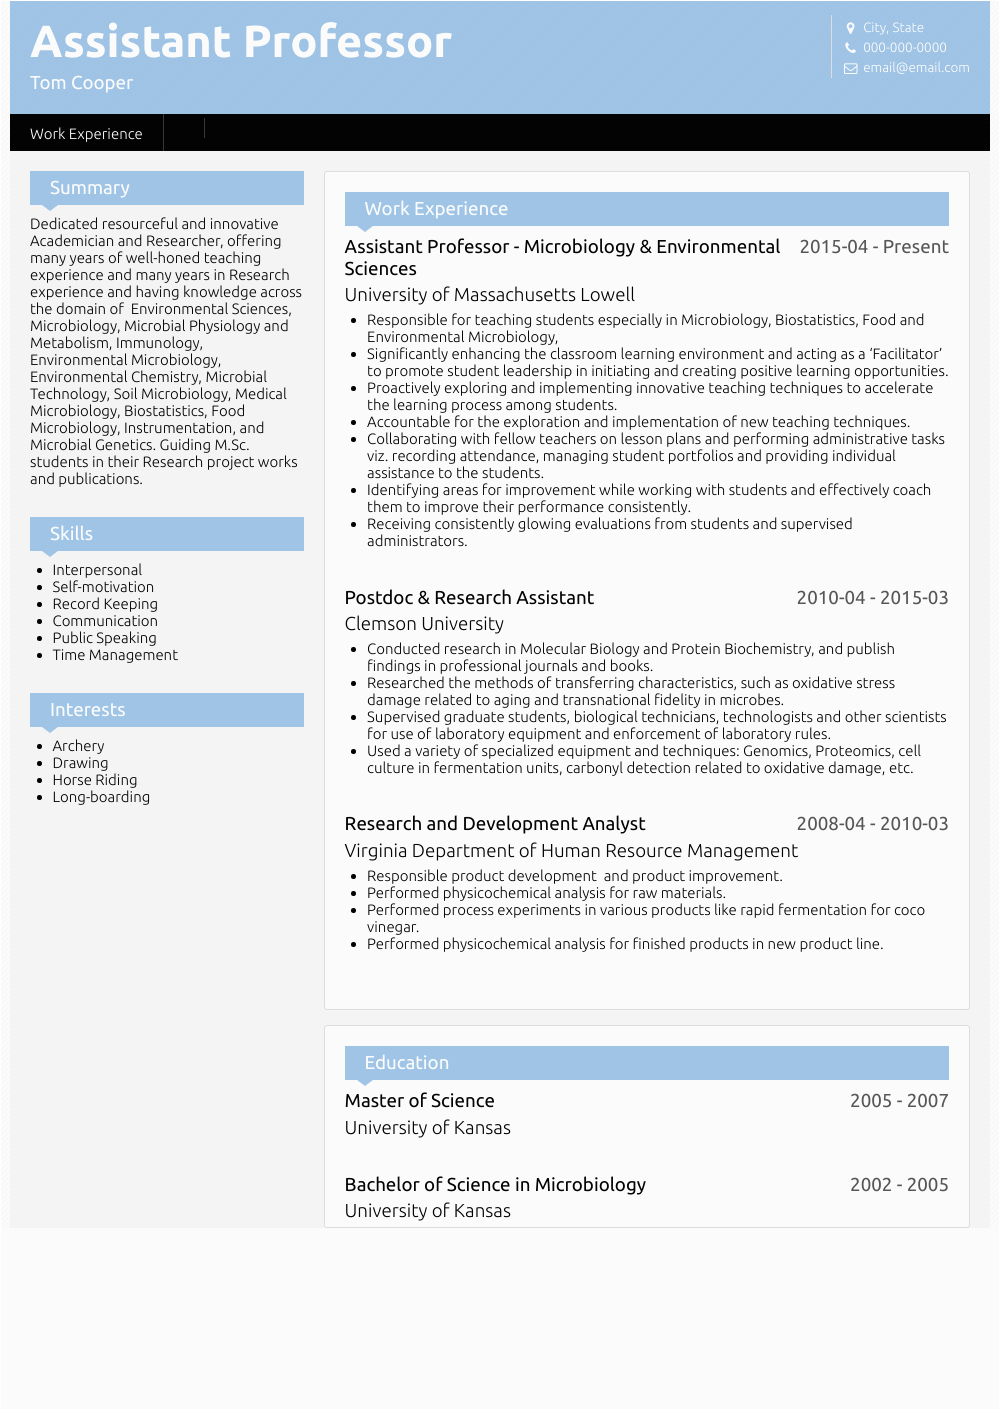 Sample Resume for assistant Professor Fresher assistant Professor Resume Samples and Templates